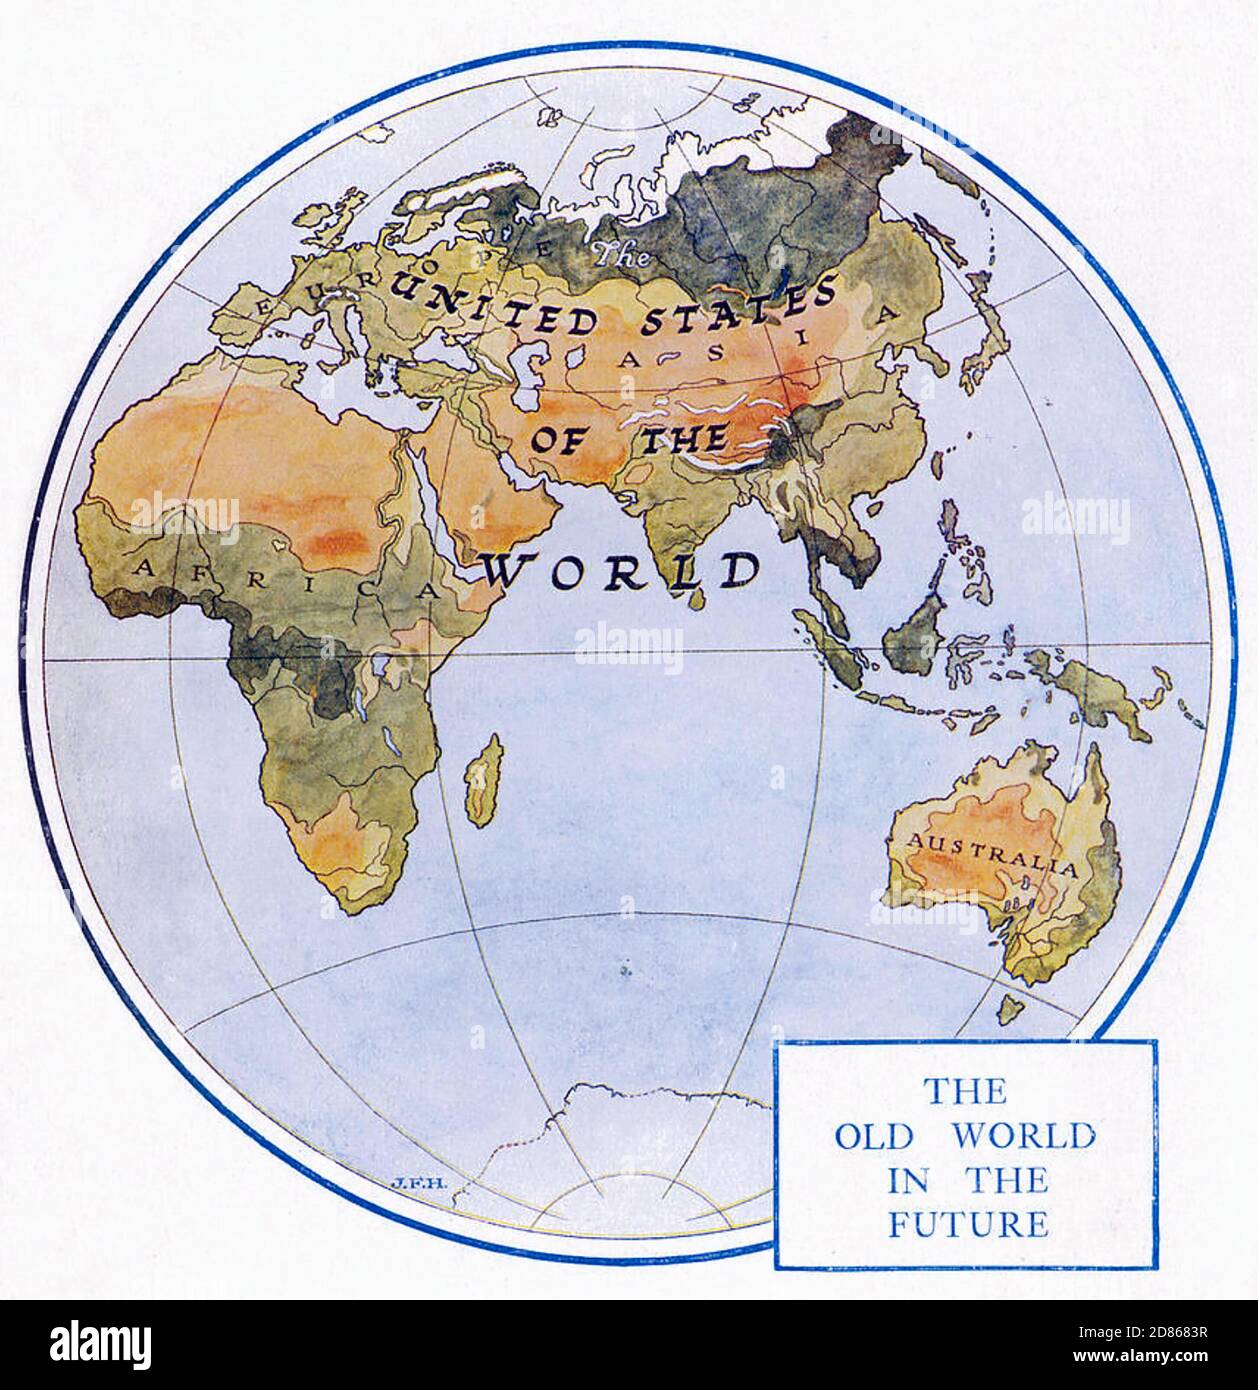 H. G. WELLS (1866-1946) englischer Schriftsteller, seine globale Vision von den Vereinigten Staaten der Welt aus seinem Buch "The Outline of History" von 1919 Stockfoto